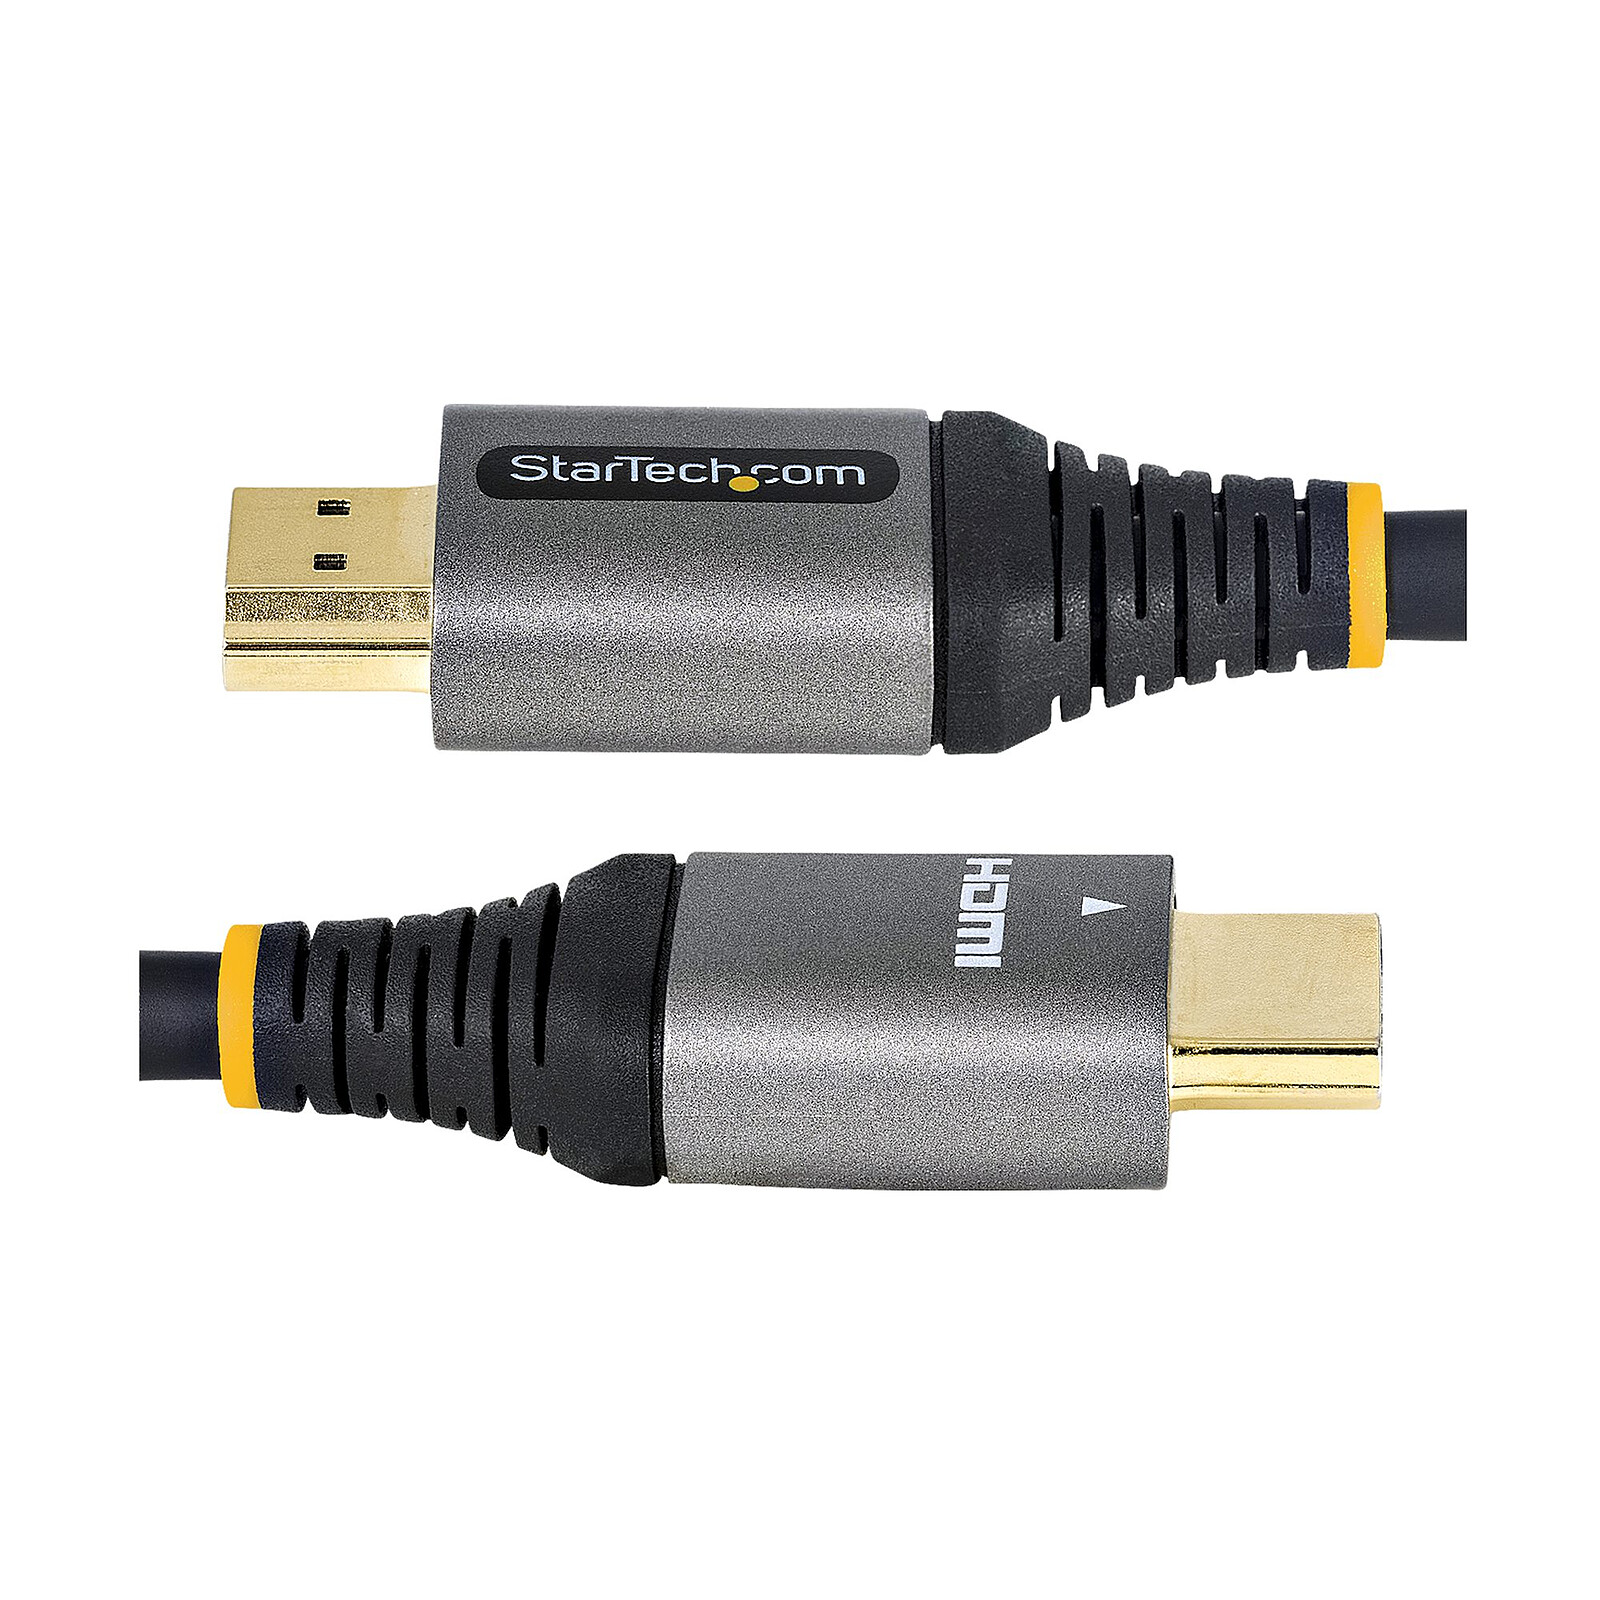 Achetez en gros Câble Hdmi Long 2.0 Résolution 4k Avec Booster En Ferrite à  L'intérieur De 10m 15m 20m 25m 30m 50m Ou 100m En Option Chine et Câble Hdmi  à 5.75